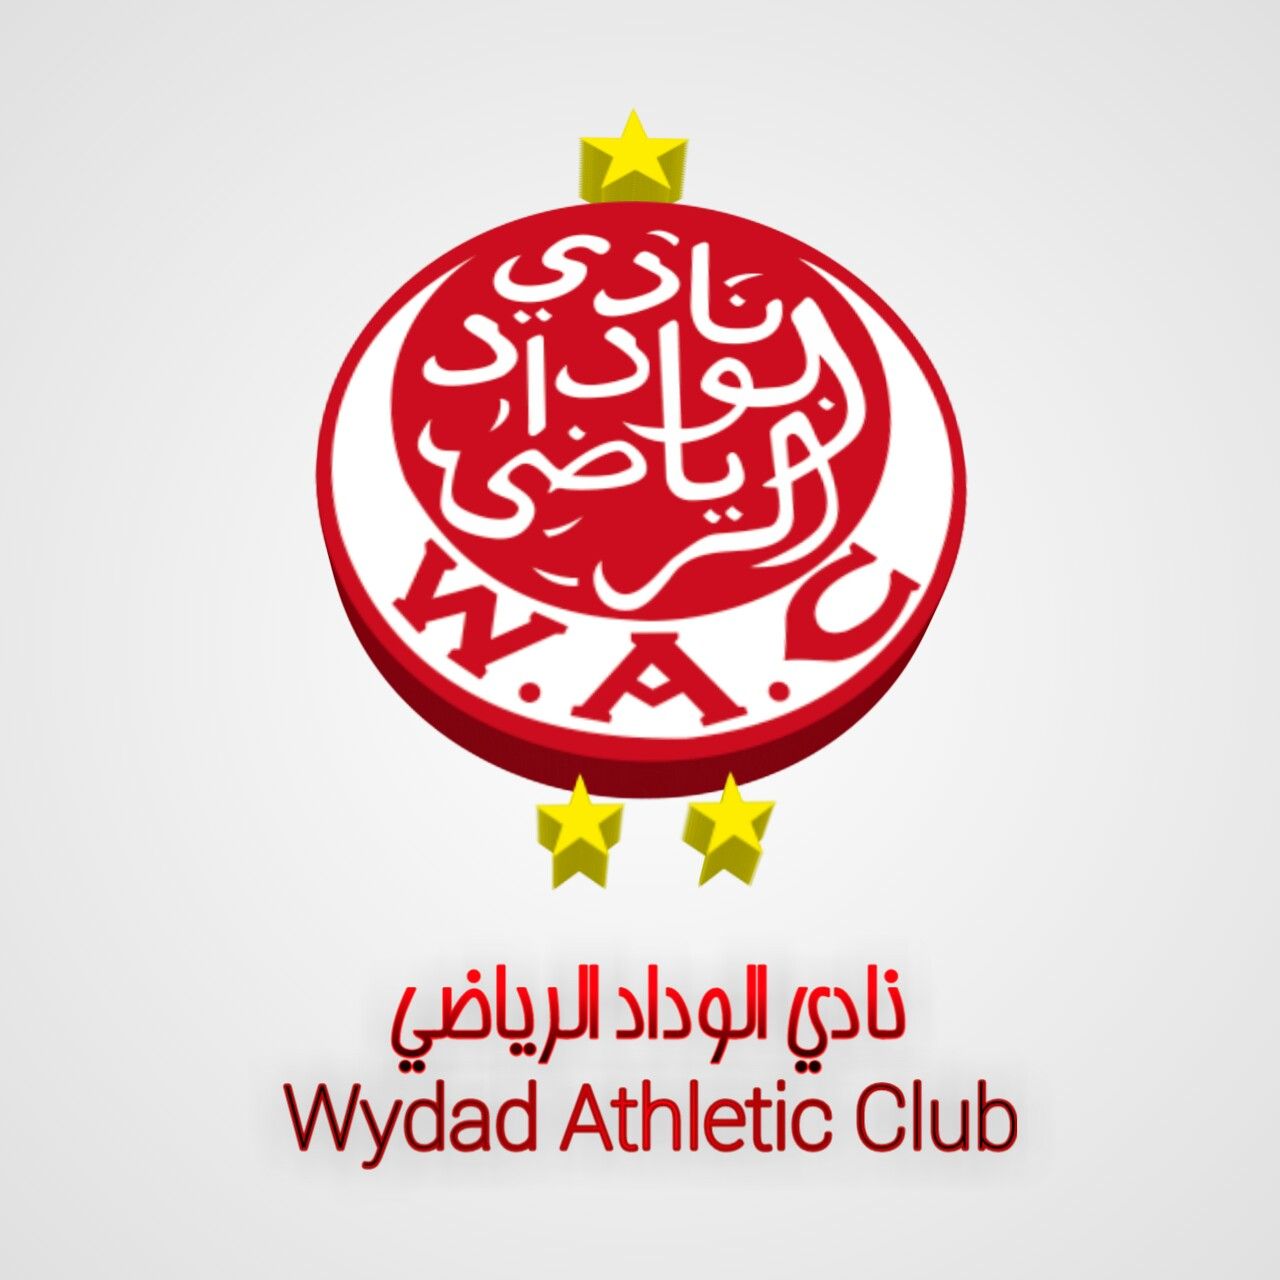 Free download Wydad Athletic Club